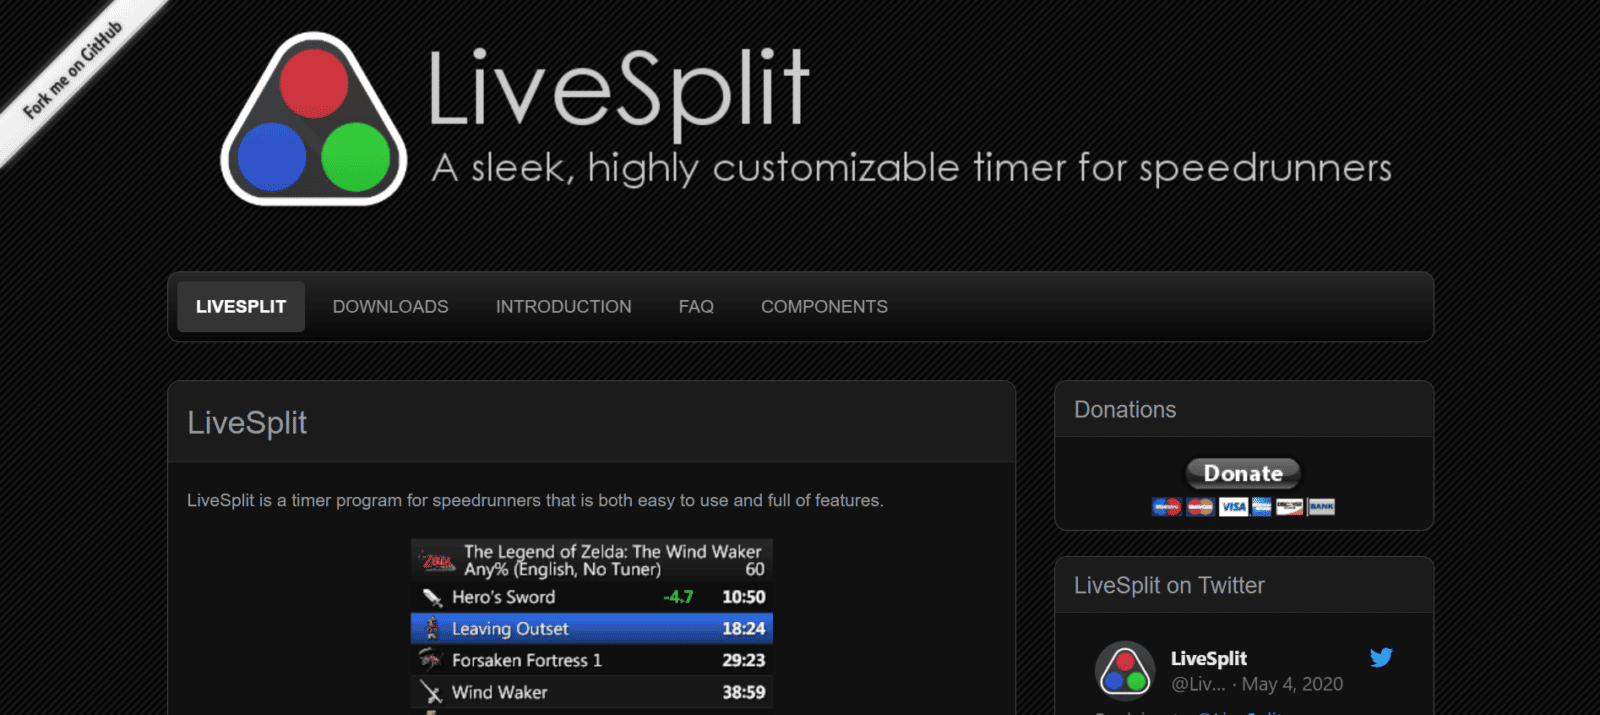 Splitter - Speedrun Timer iOS App: Stats & Benchmarks • SplitMetrics